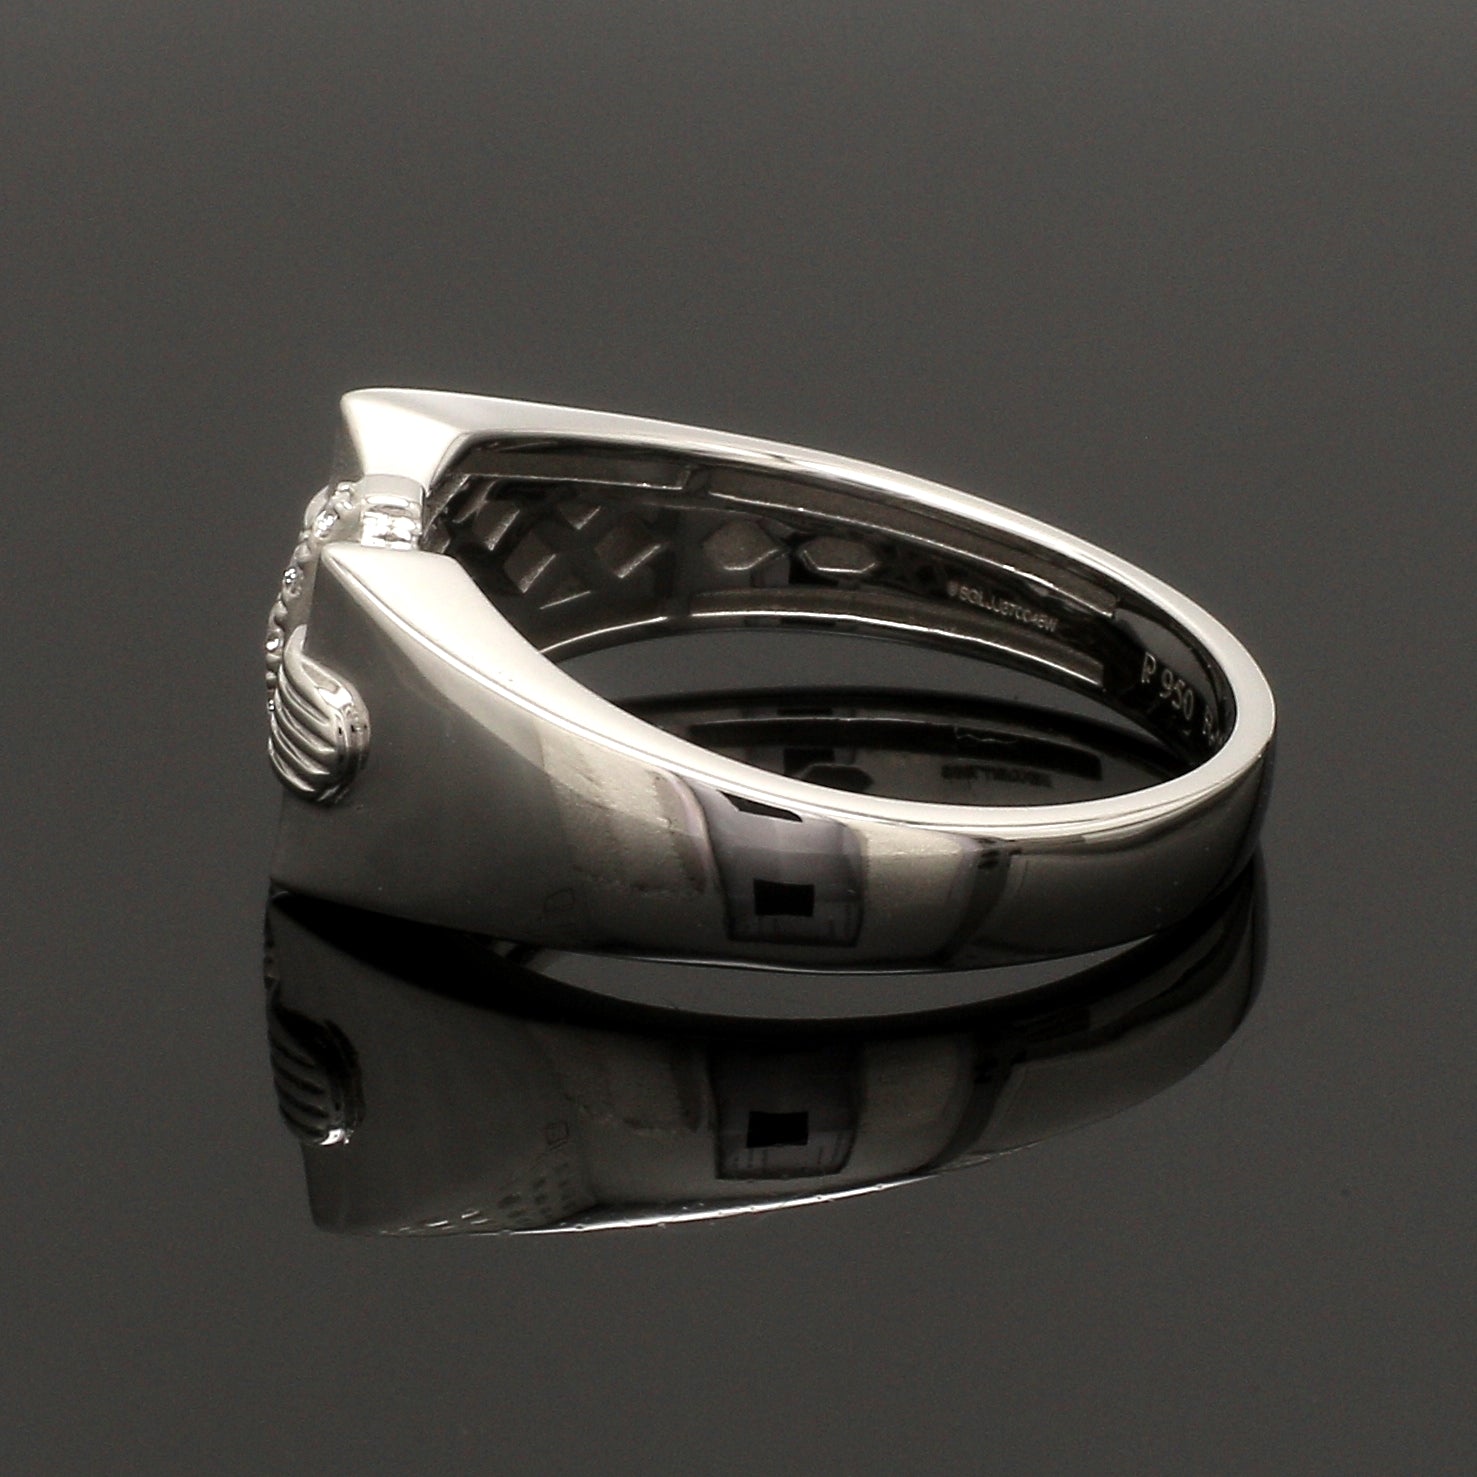 Men of Platinum | Platinum Diamond Ring for Men JL PT 1355   Jewelove.US